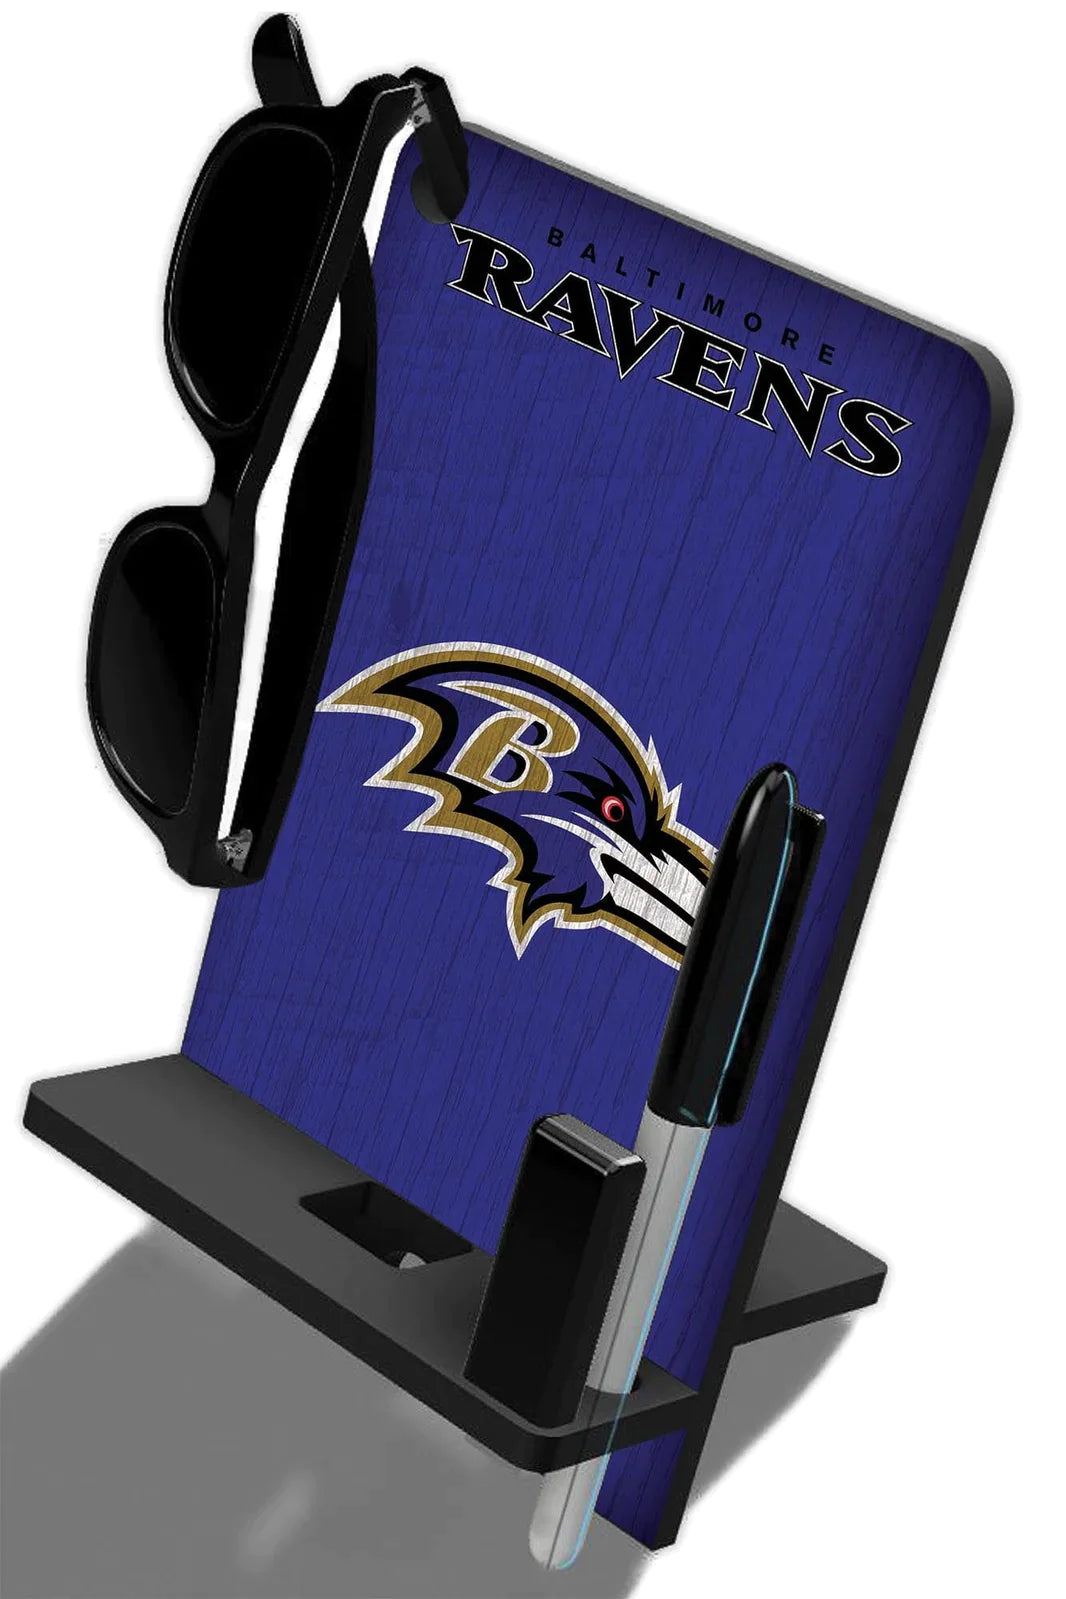 Base de escritorio para Celular Phone Stand NFL Ravens